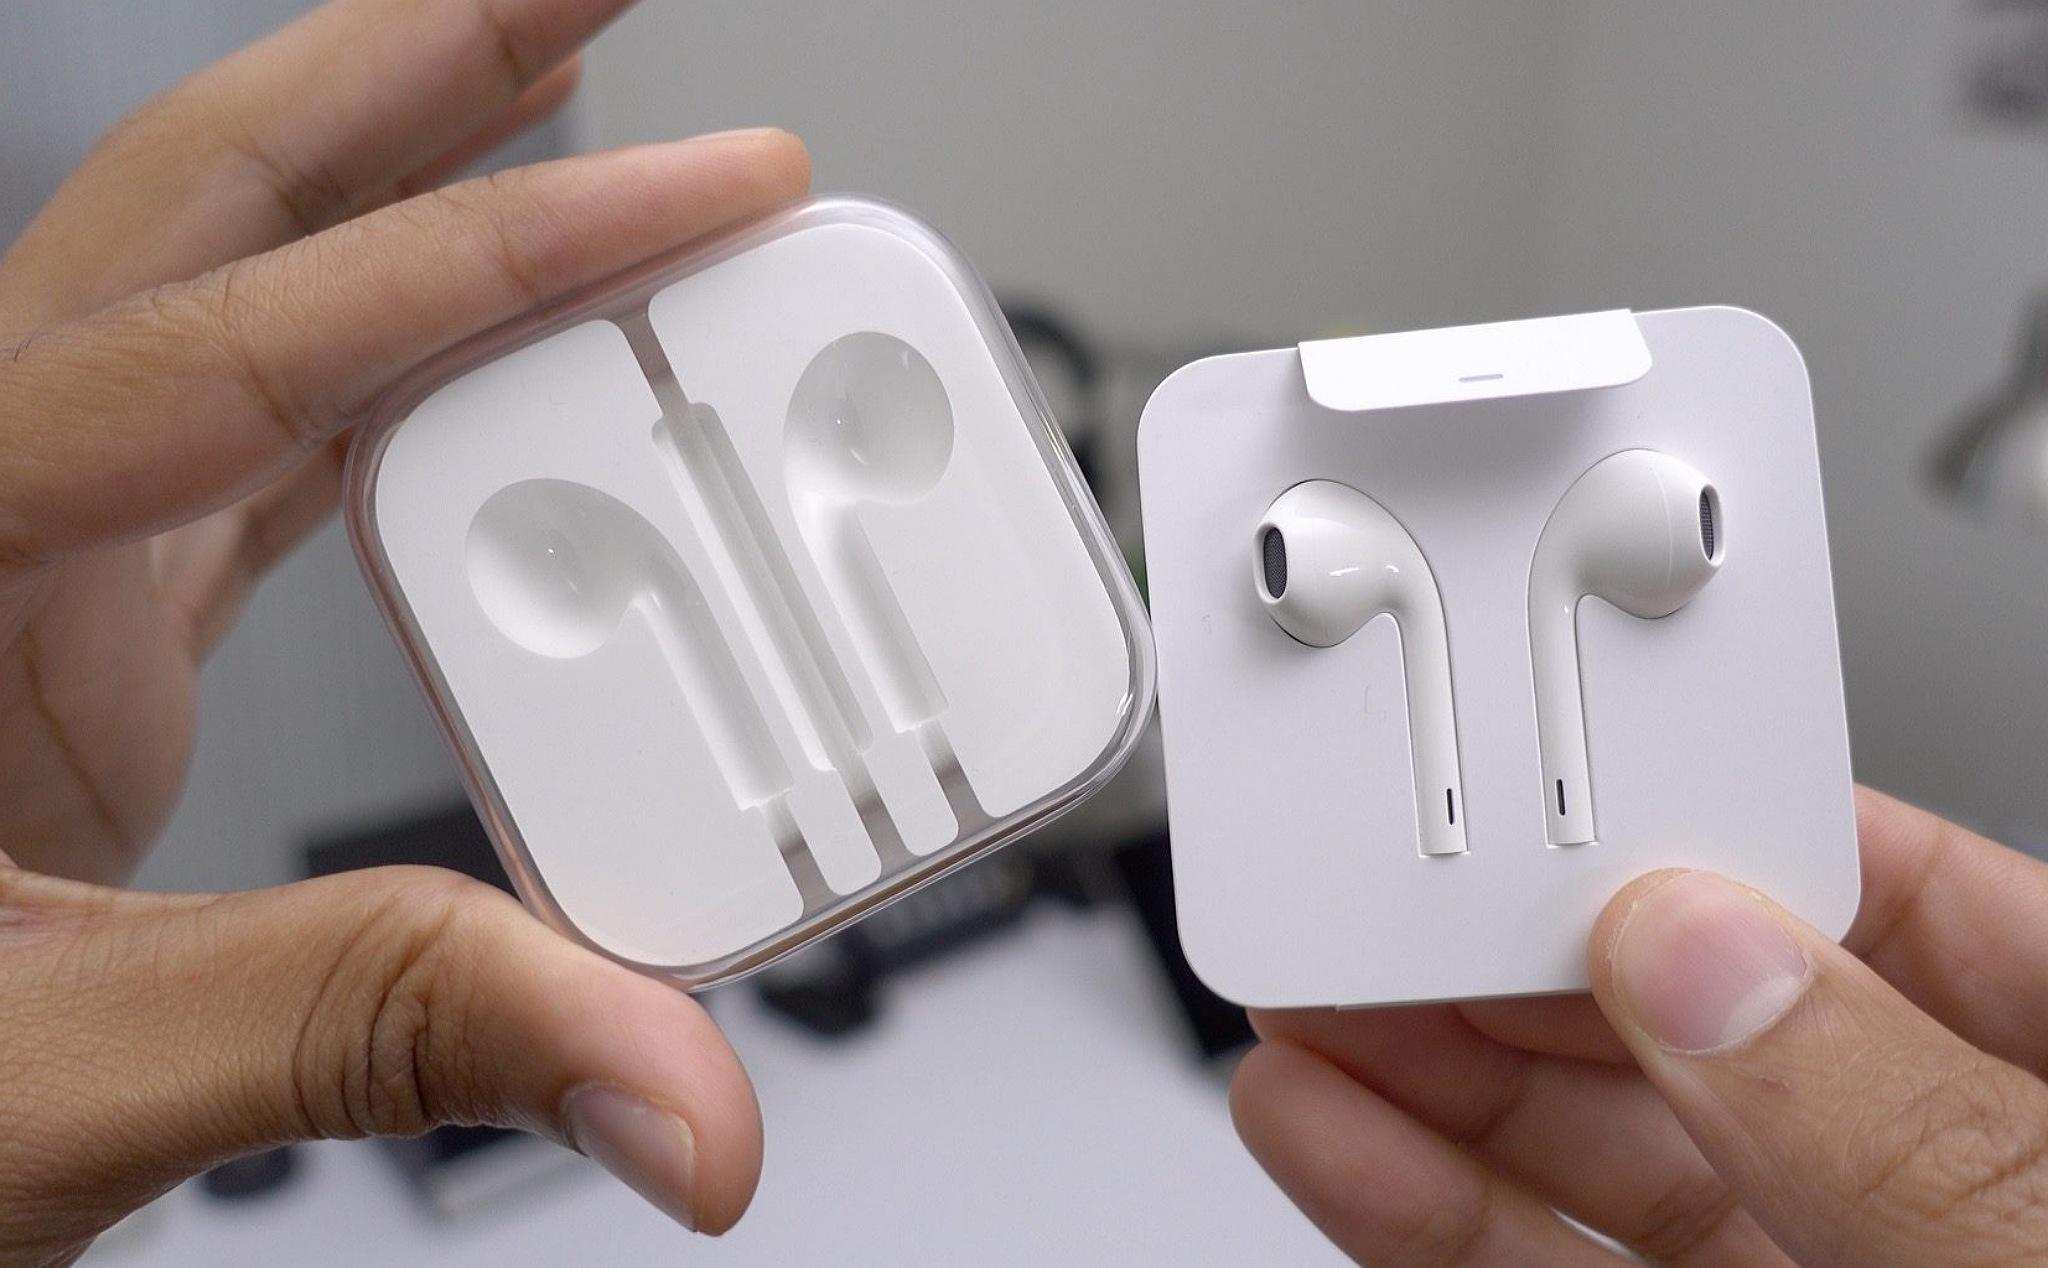 iPhone bán ra tại Pháp không còn buộc phải kèm theo tai nghe EarPods nữa